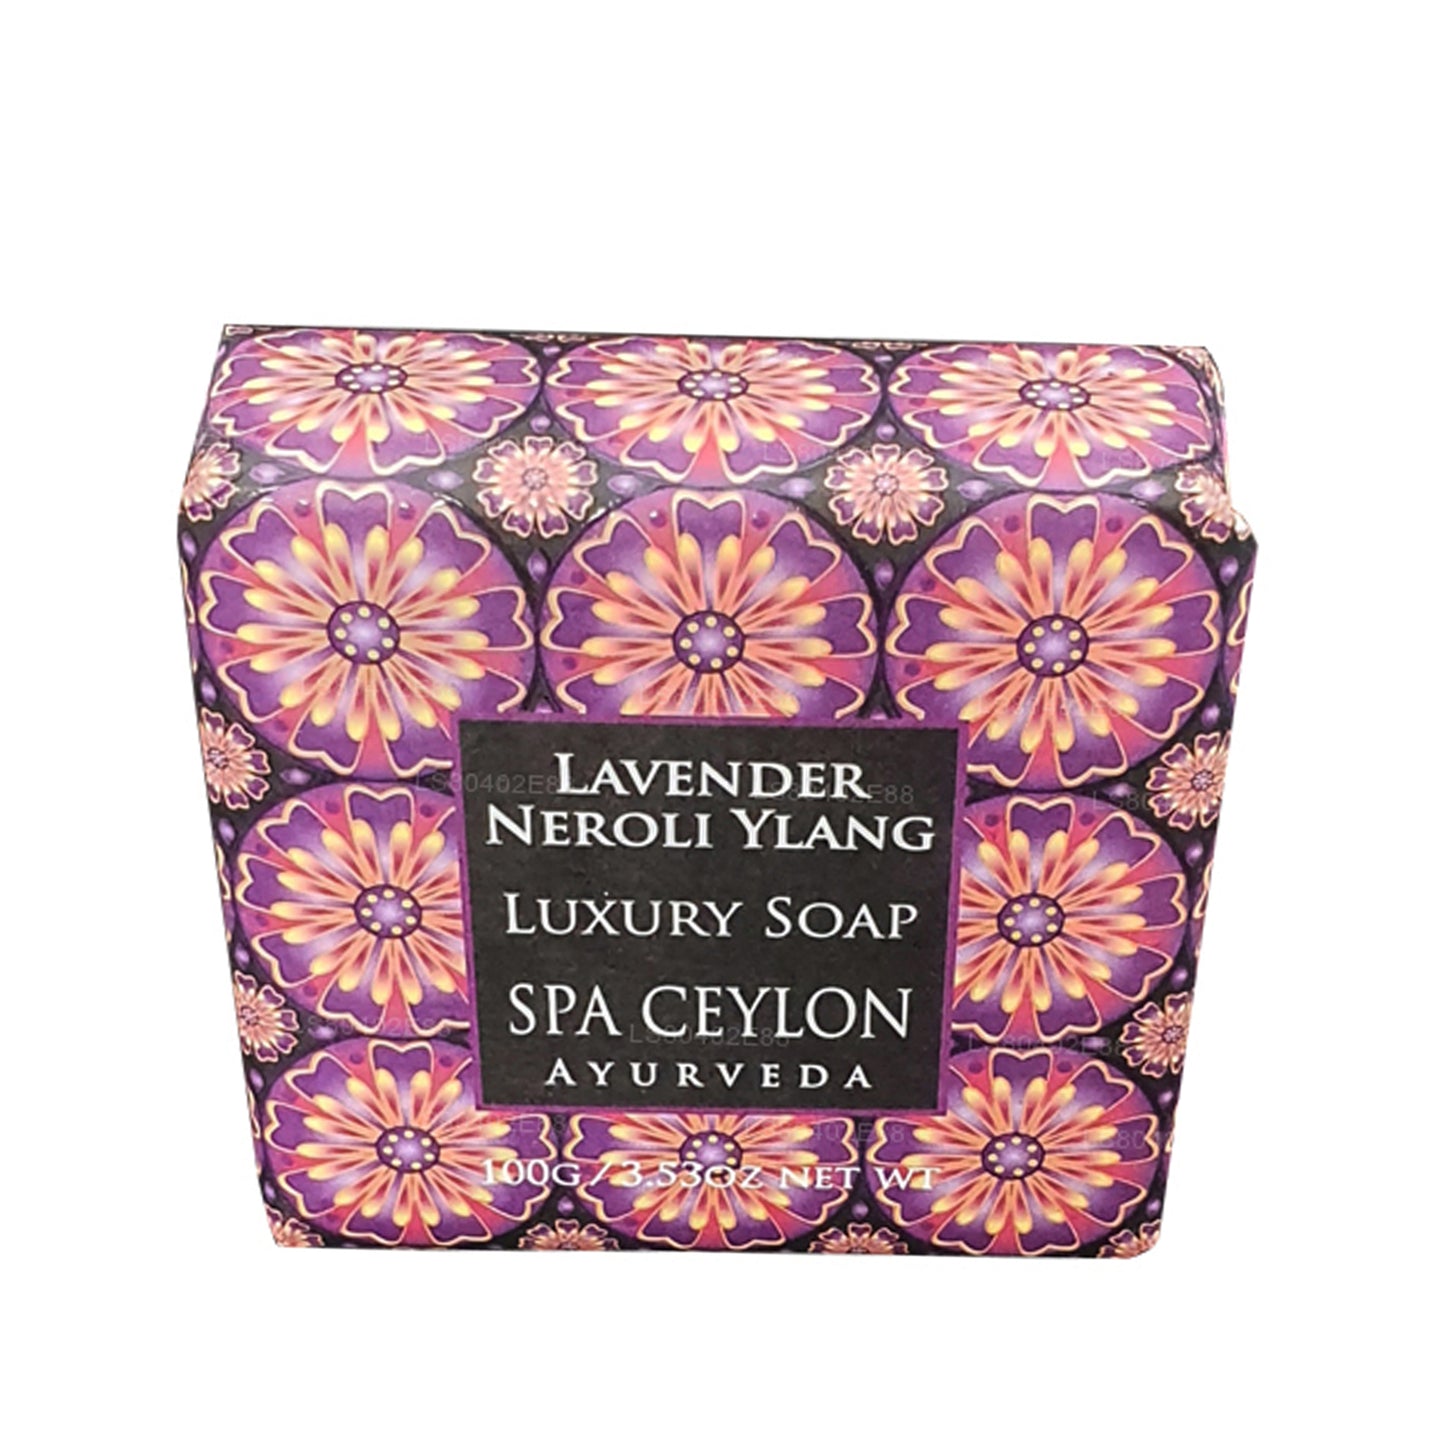 Savon de luxe Spa Ceylan Lavender Neroli Ylang (100 g)